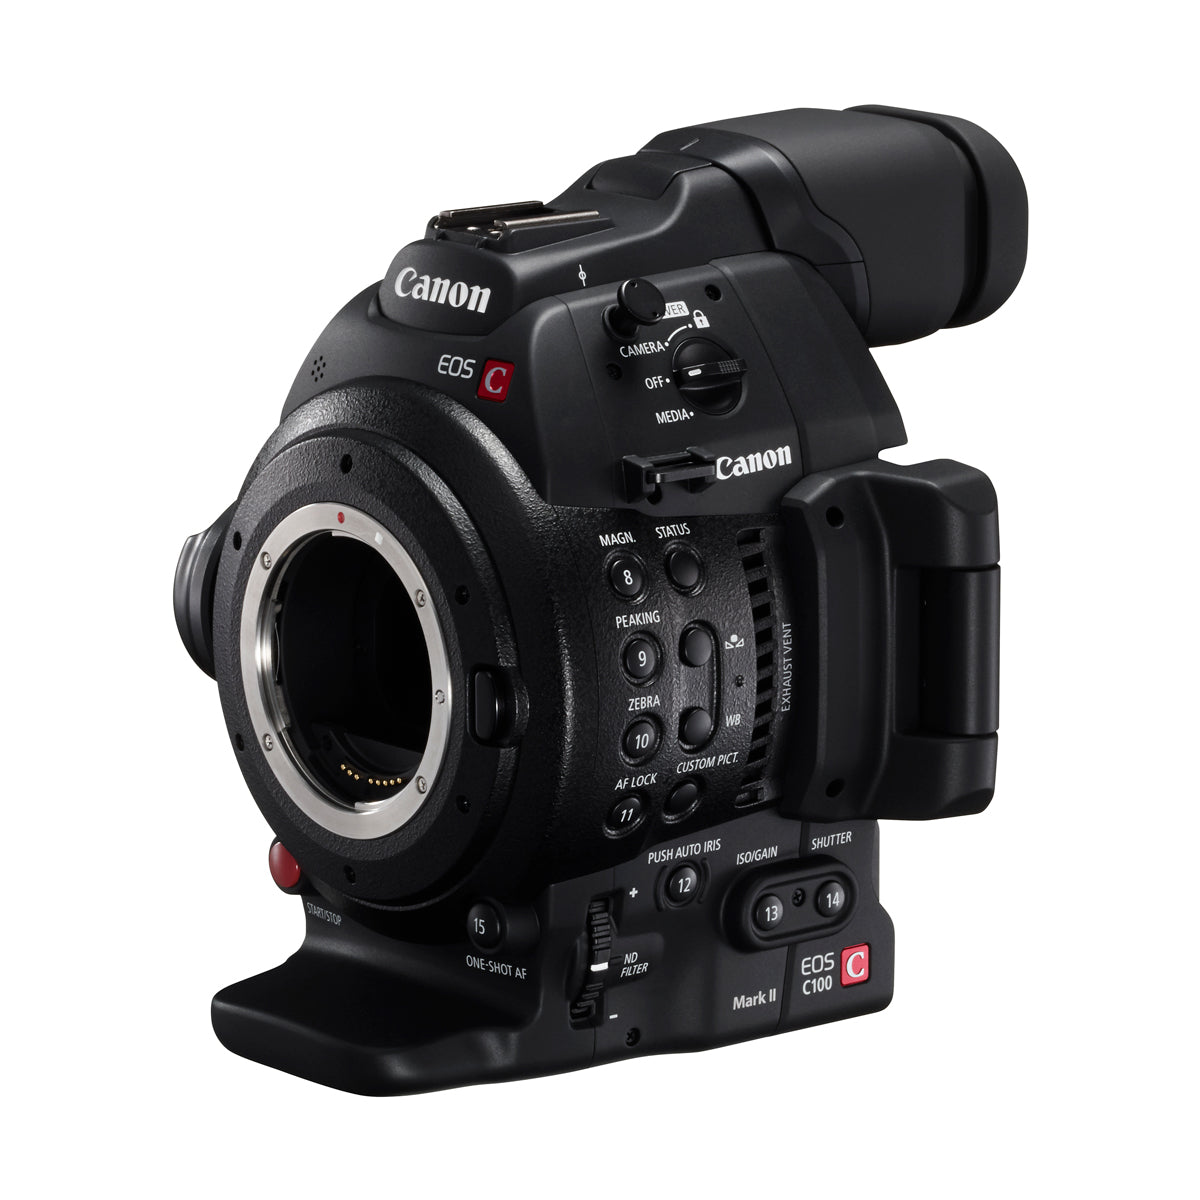 Canon EOS C100 Mark II Dual Pixel CMOS AF & EF 24-105mm f/4L IS II USM Zoom Lens Kit